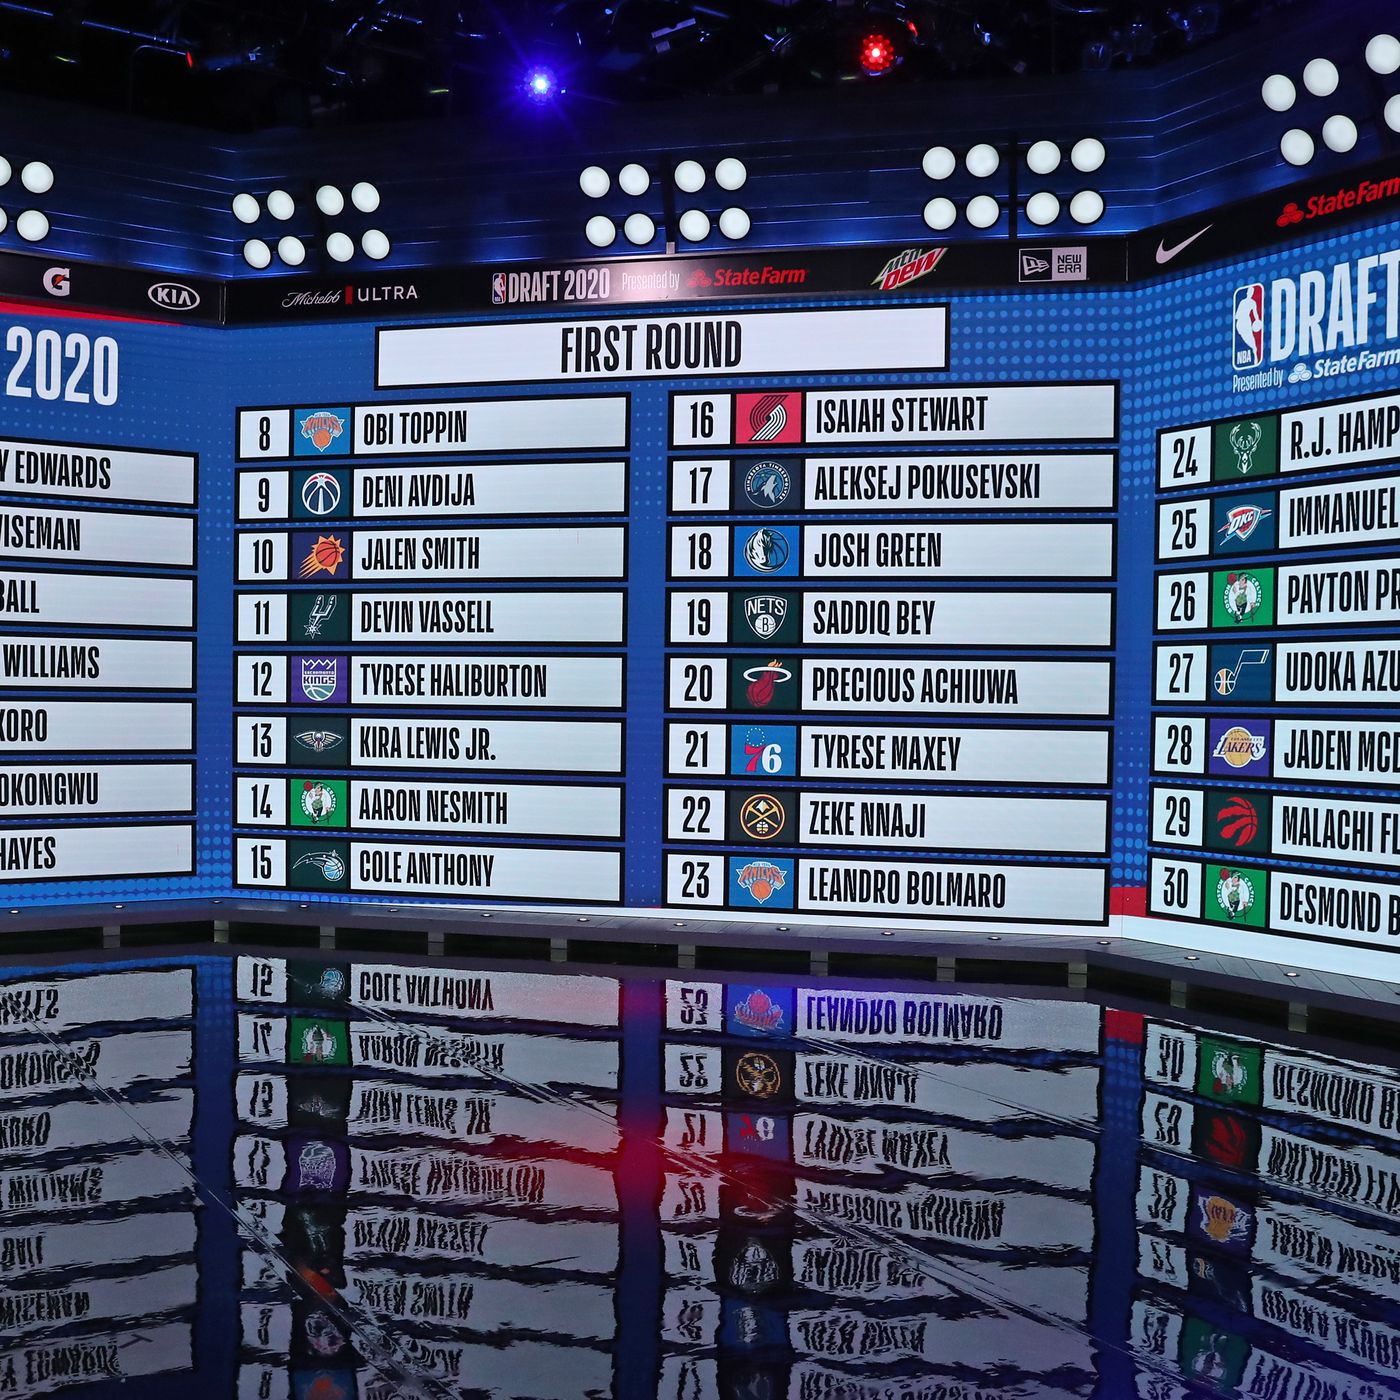 draft picks